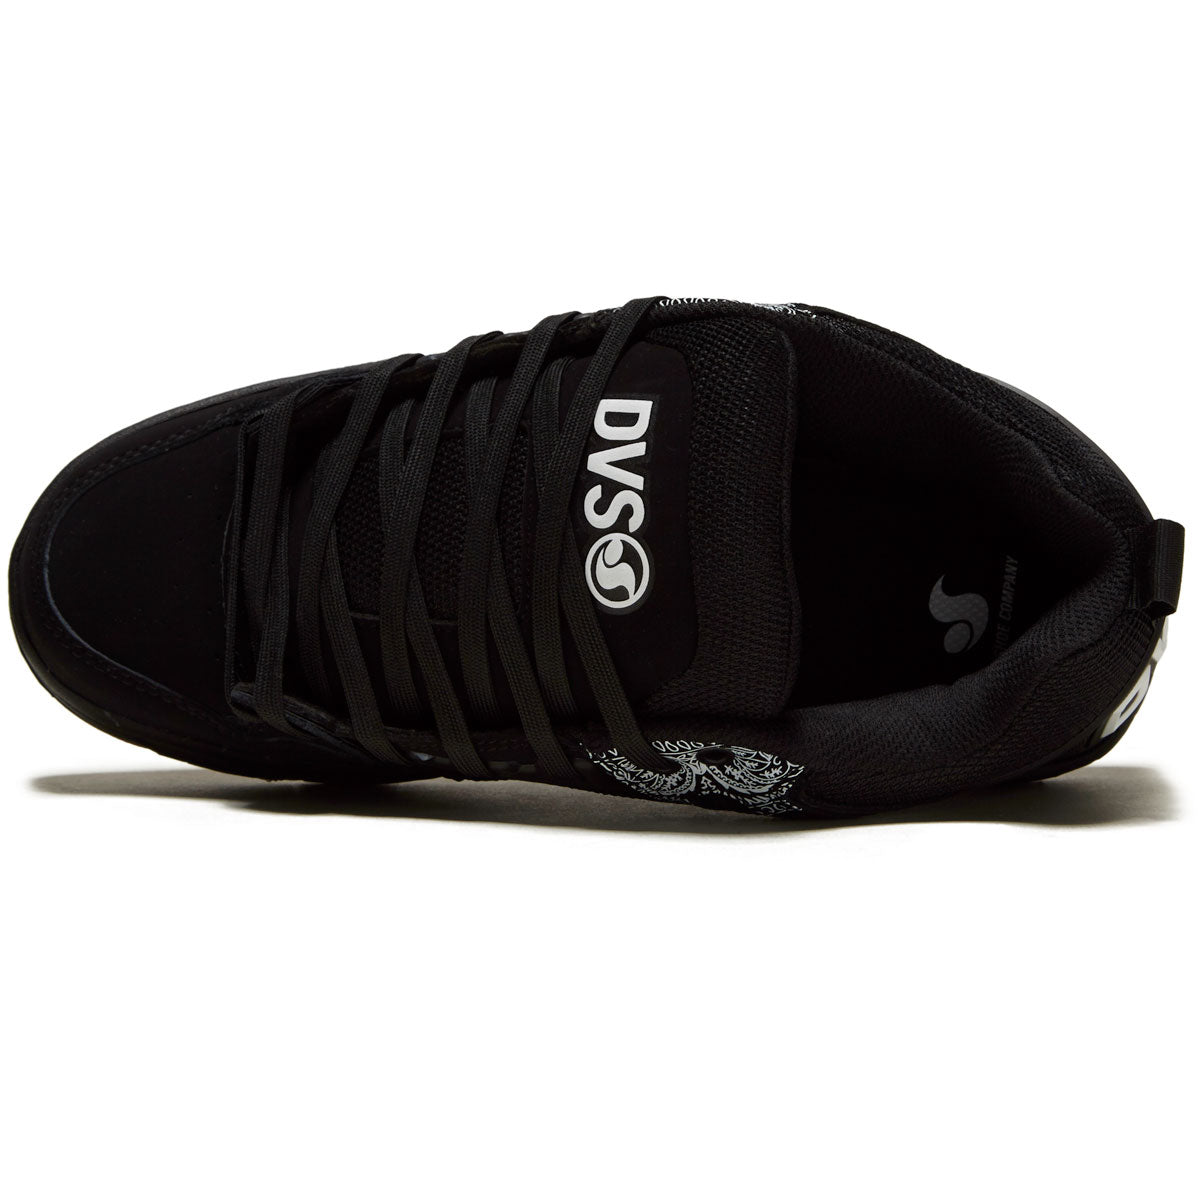 DVS Comanche Shoes - Black/White Print – CCS